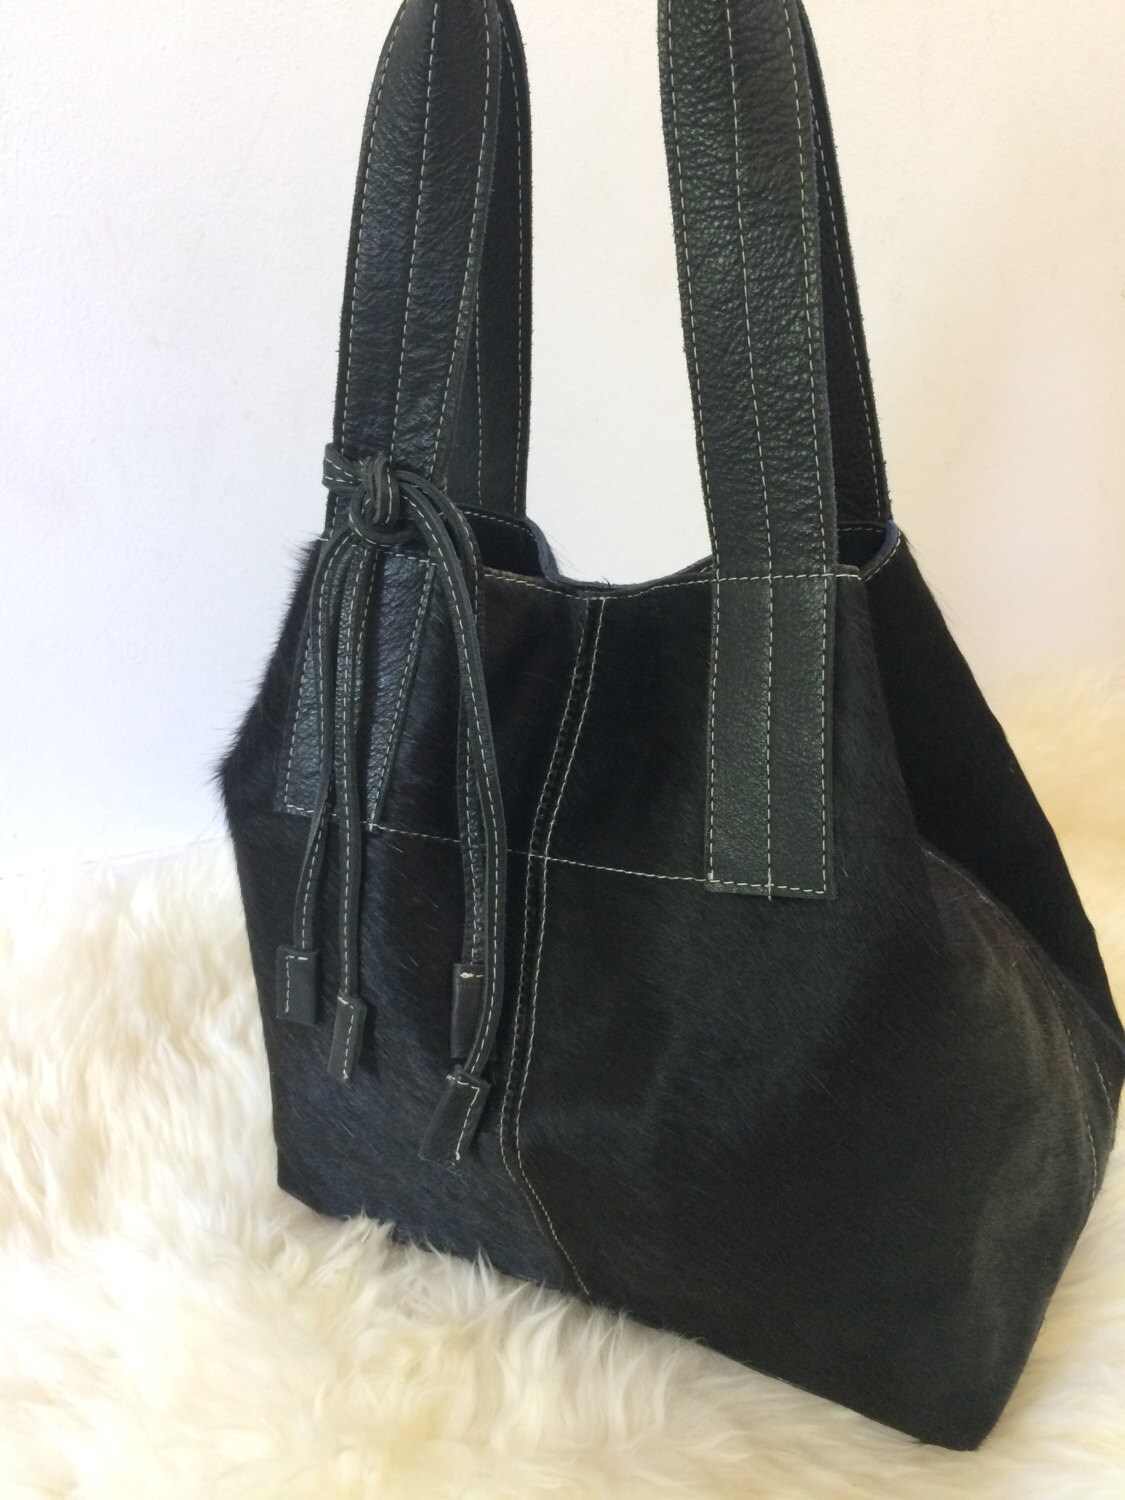 Black Cowhide Purse Unique Piece Cow Hide Handbag. Leather | Etsy